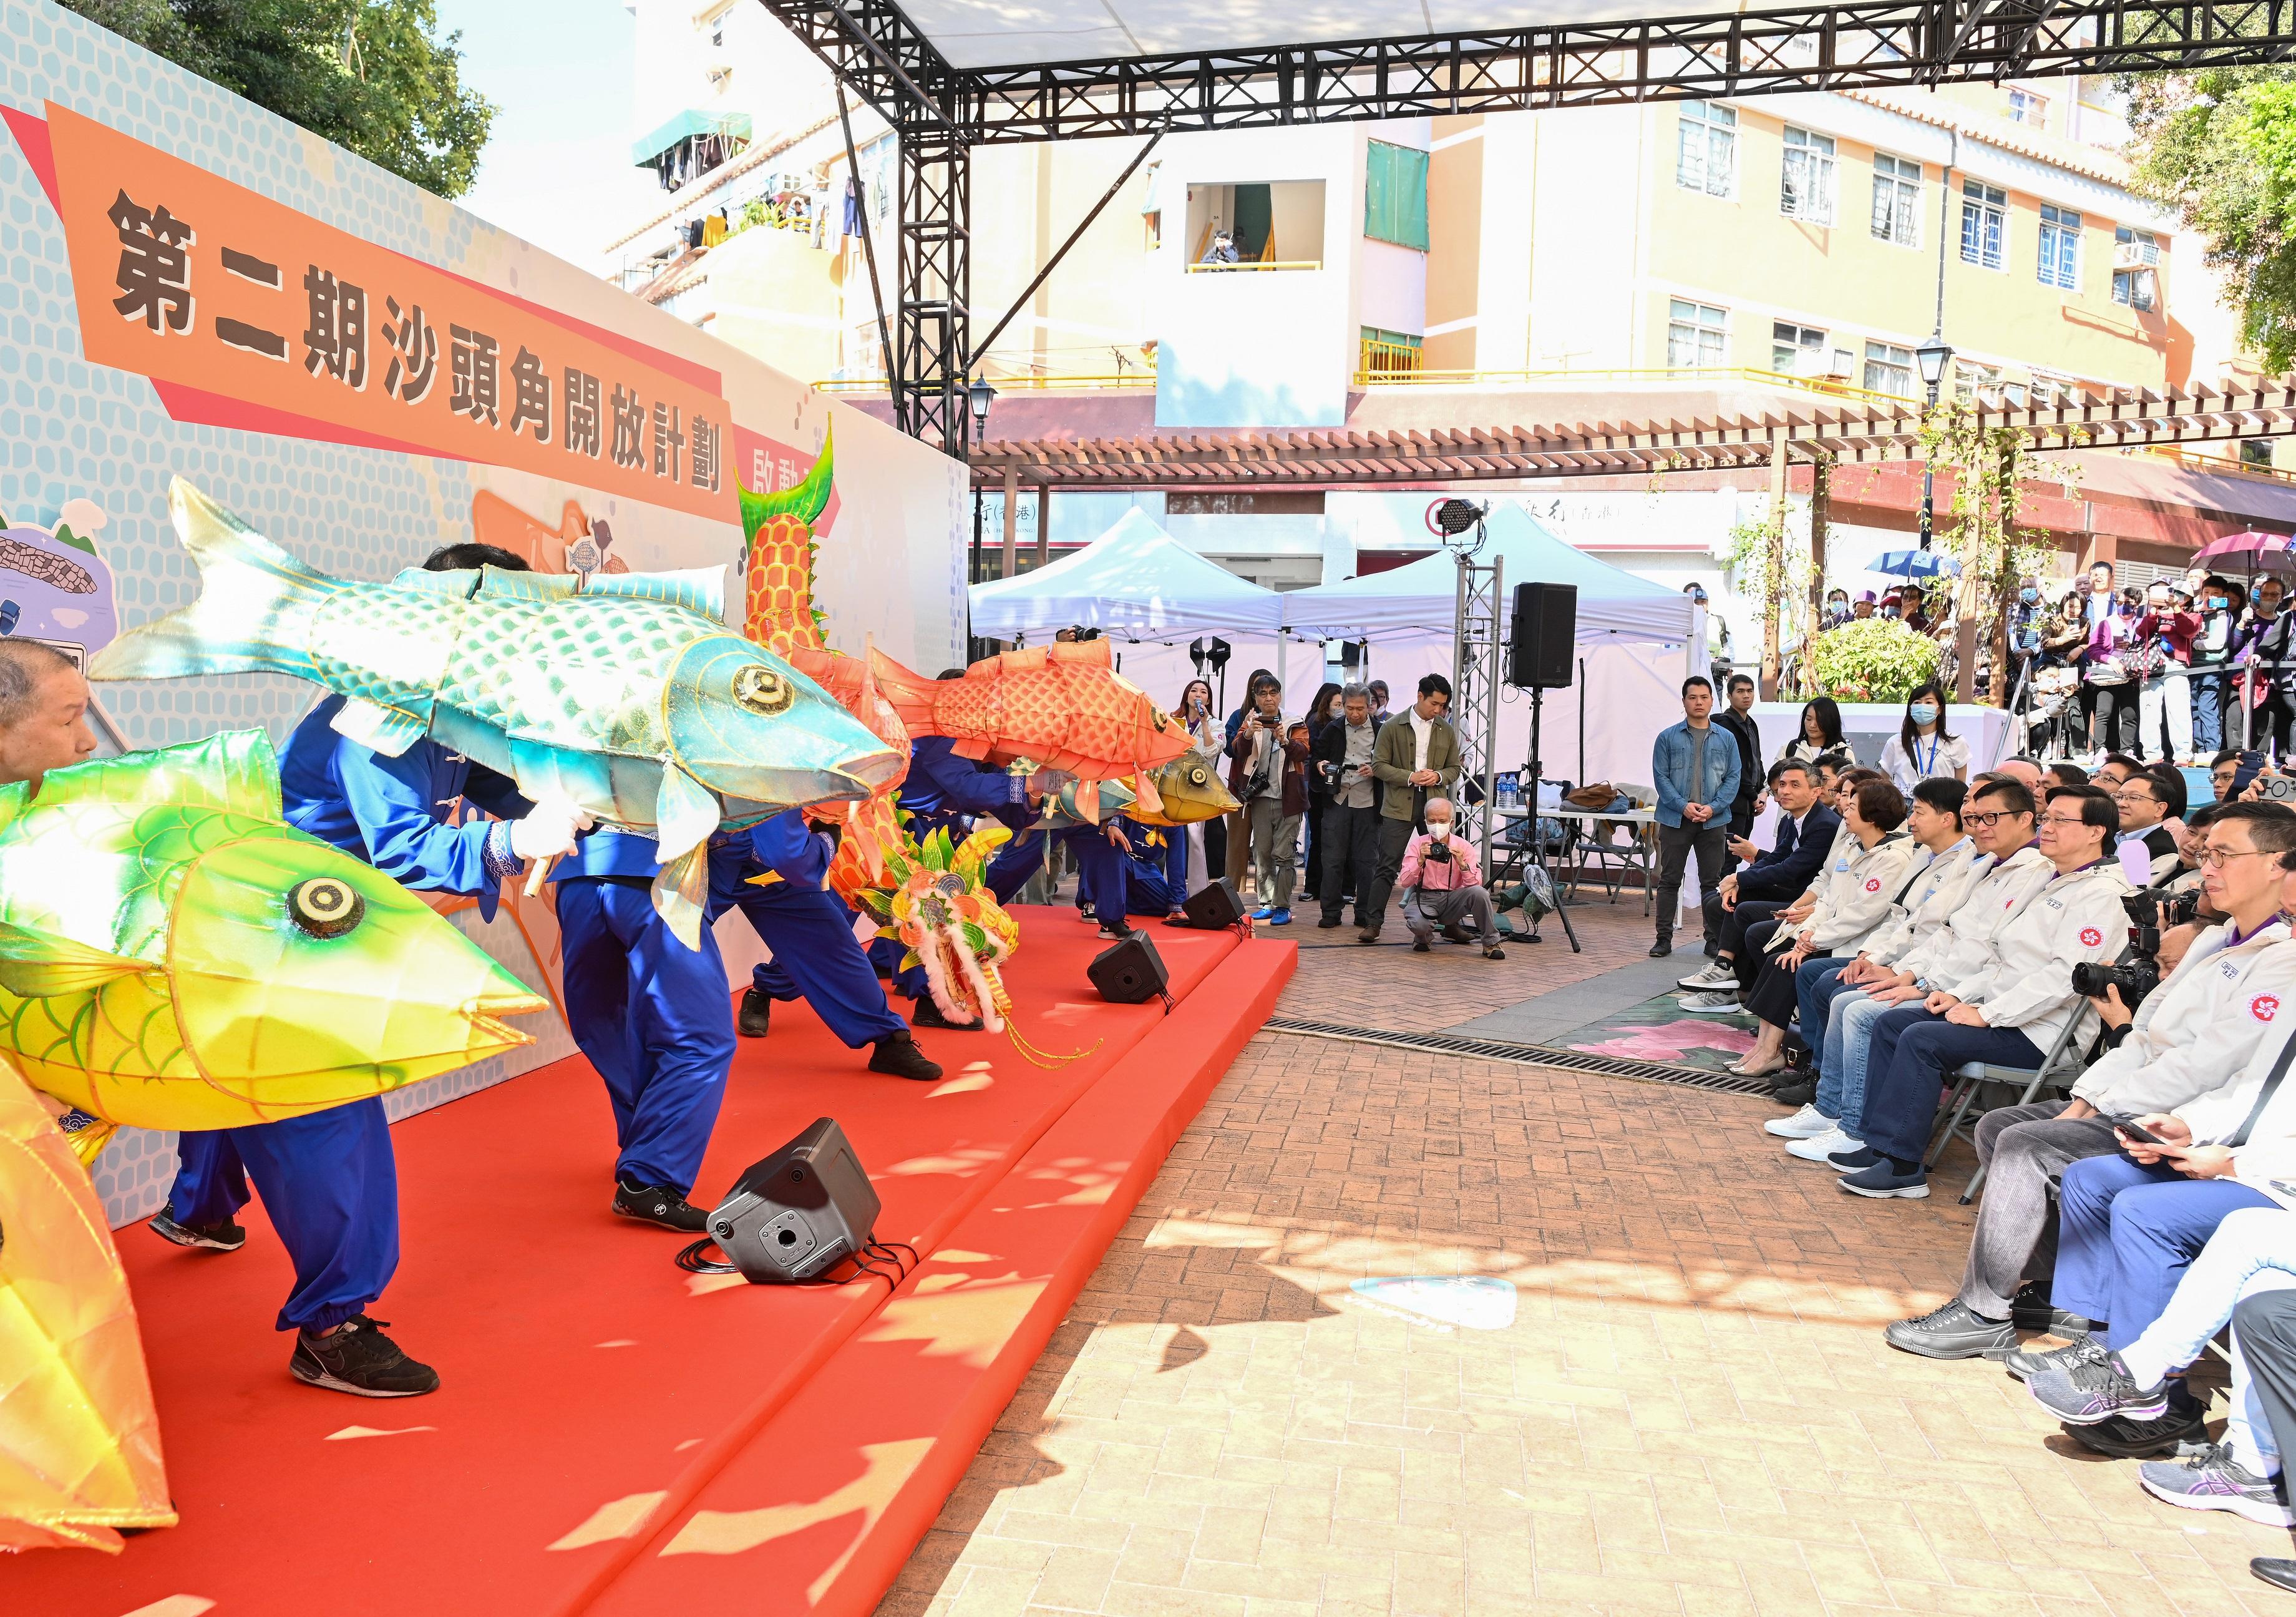 行政长官李家超今日（一月六日）主持第二期沙头角开放计划启动礼。图示李家超（右二）与其他嘉宾欣赏沙头角鱼灯舞表演。